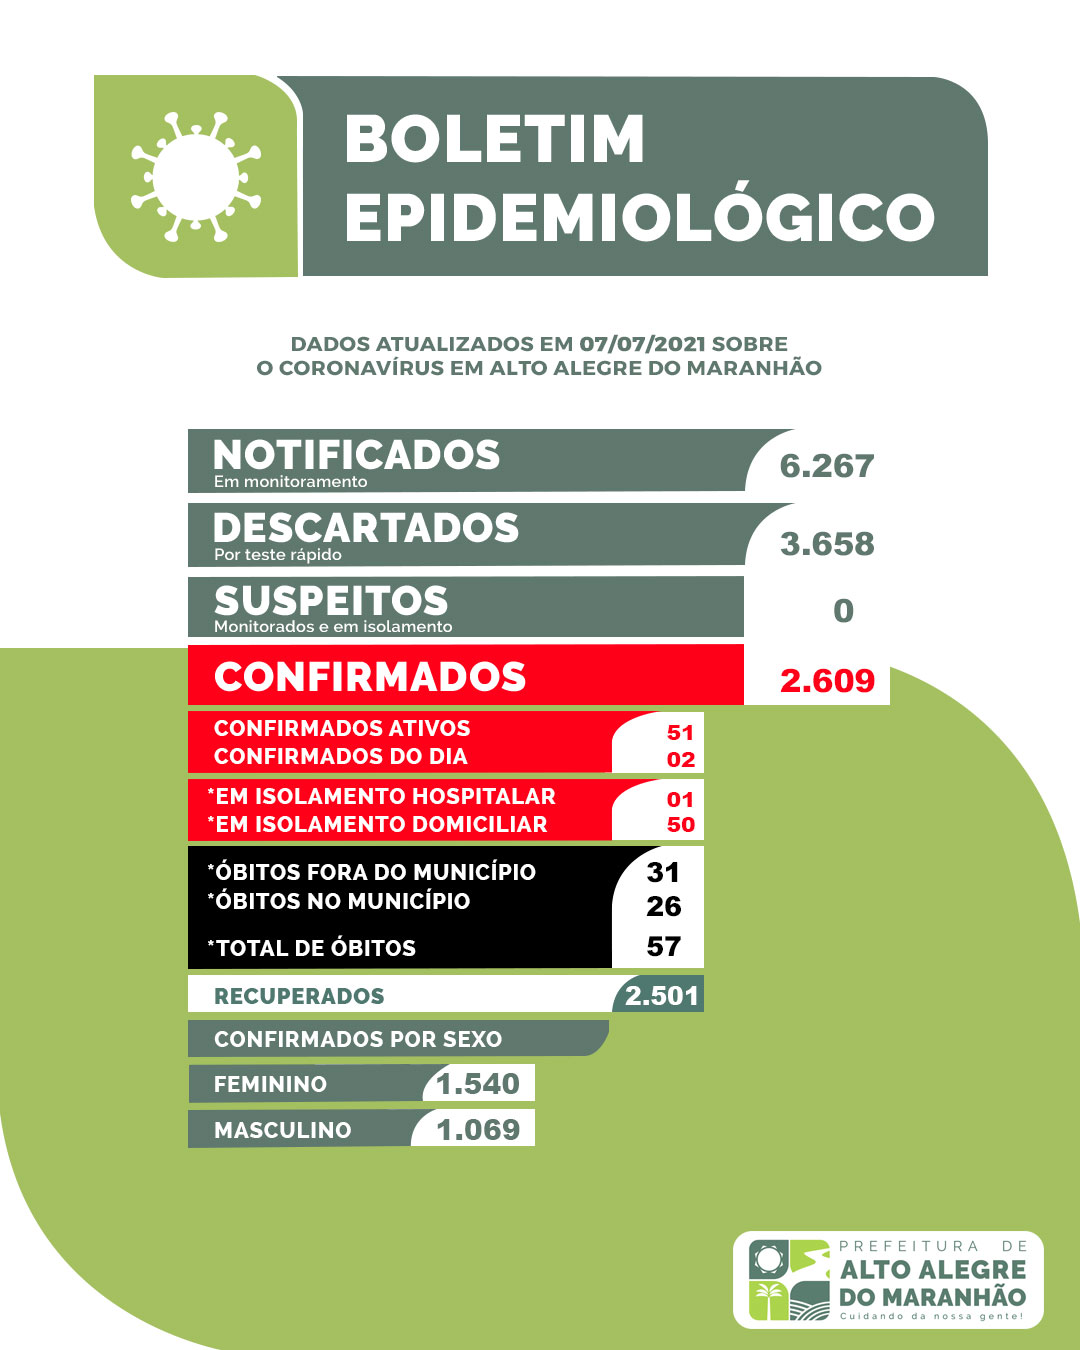 [COVID-19] Boletim epidemiológico atualizado de Alto Alegre do Maranhão 07/07/2021